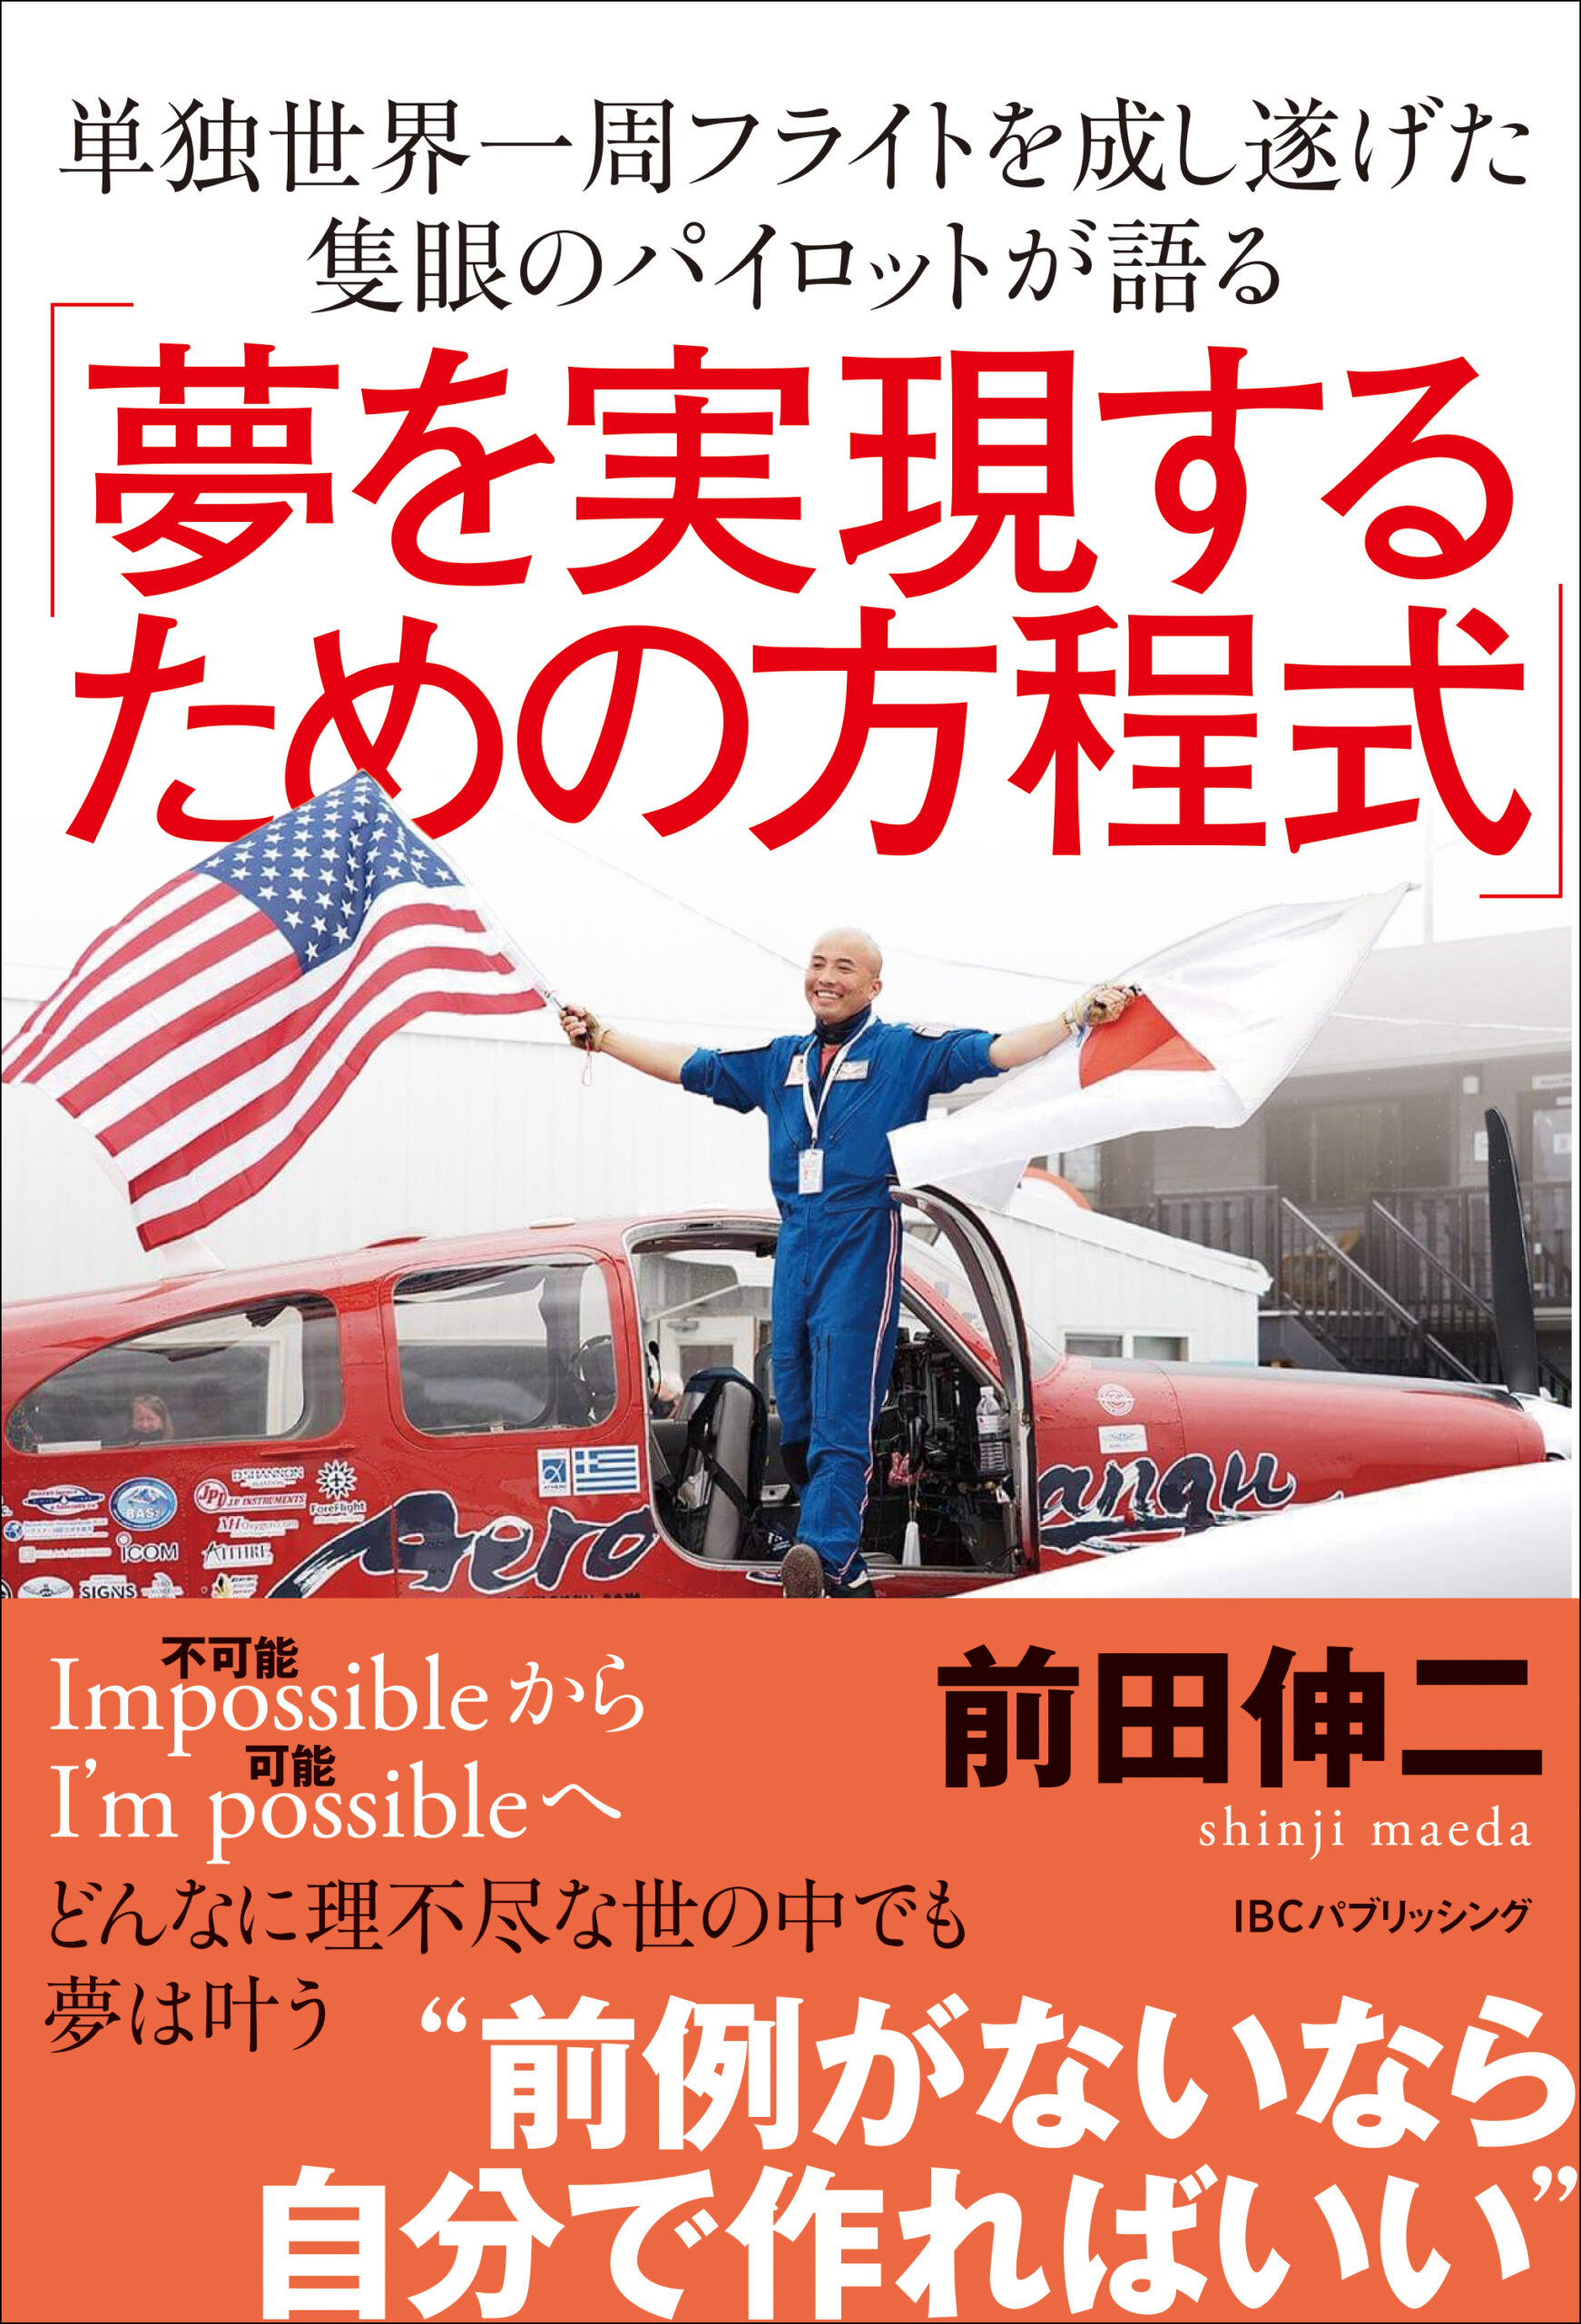 『単独世界一周フライトを成し遂げた隻眼のパイロットが語る「夢を実現するための方程式」』前田 伸二 (著)